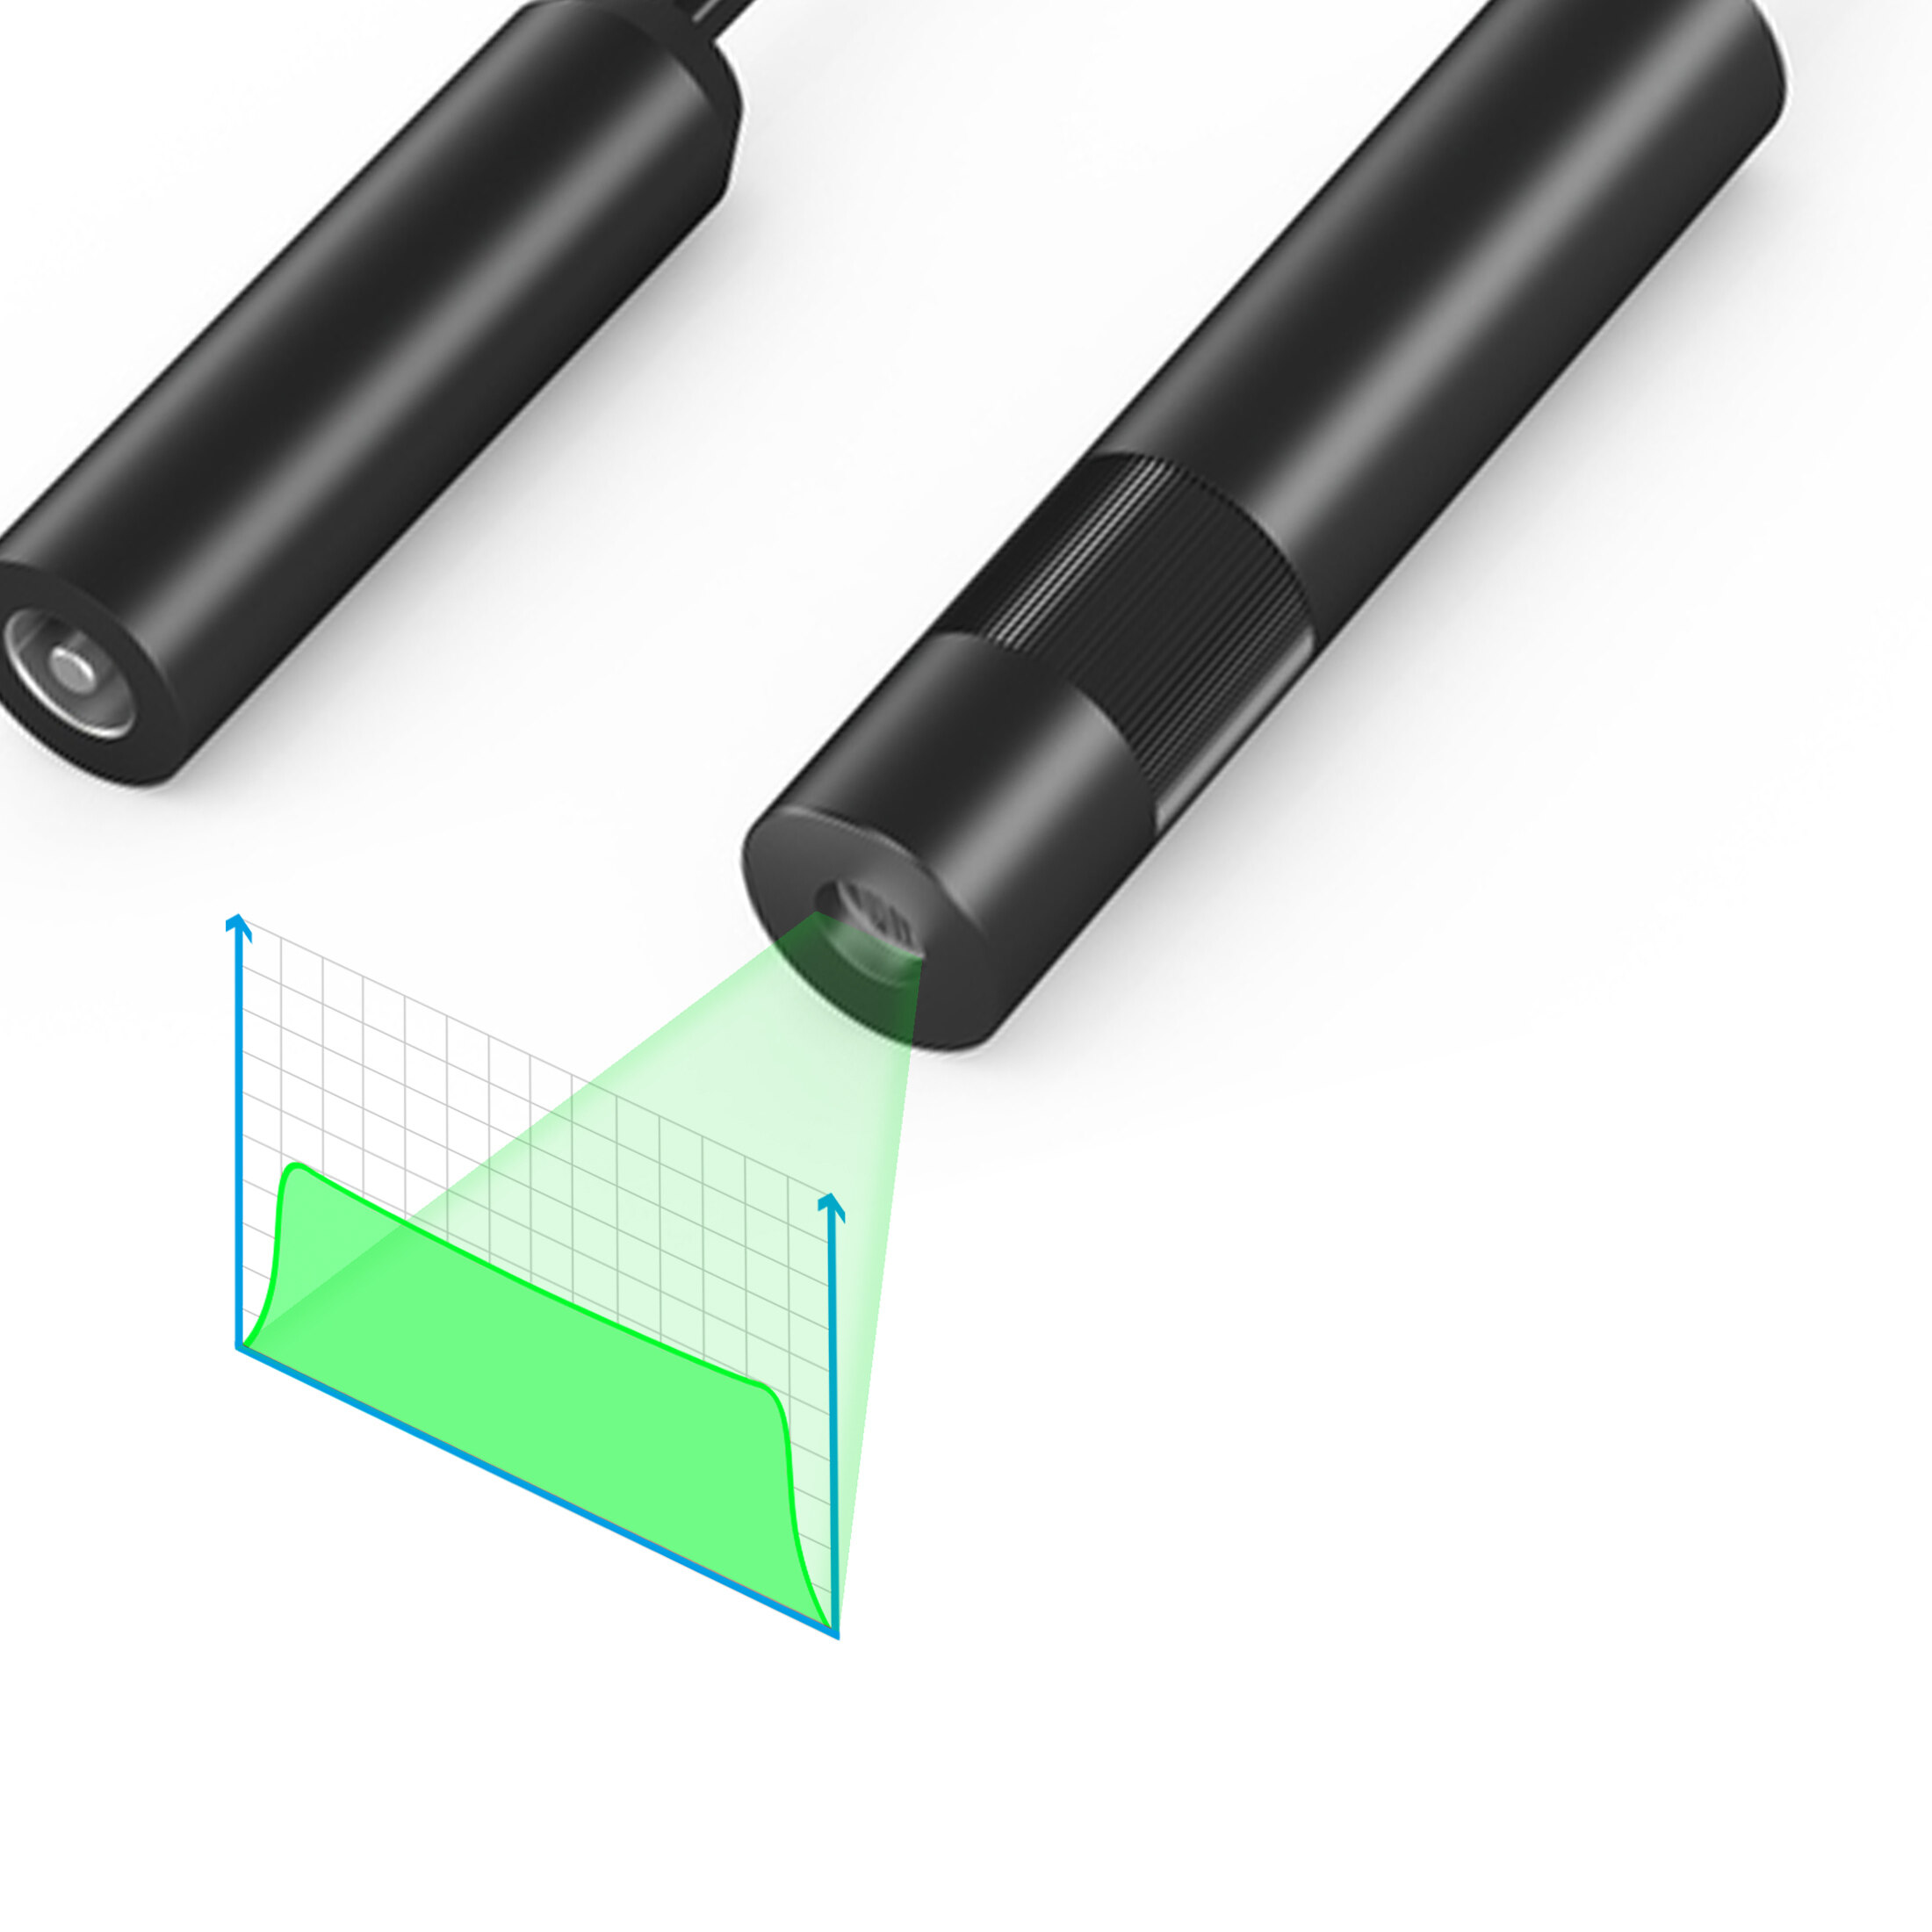 Linienlaser, grün, 520 nm, 110 °, 20 mW, 5 V DC, Ø20x90 mm, Laserklasse 2M, Fokus einstellbar, Kabe…